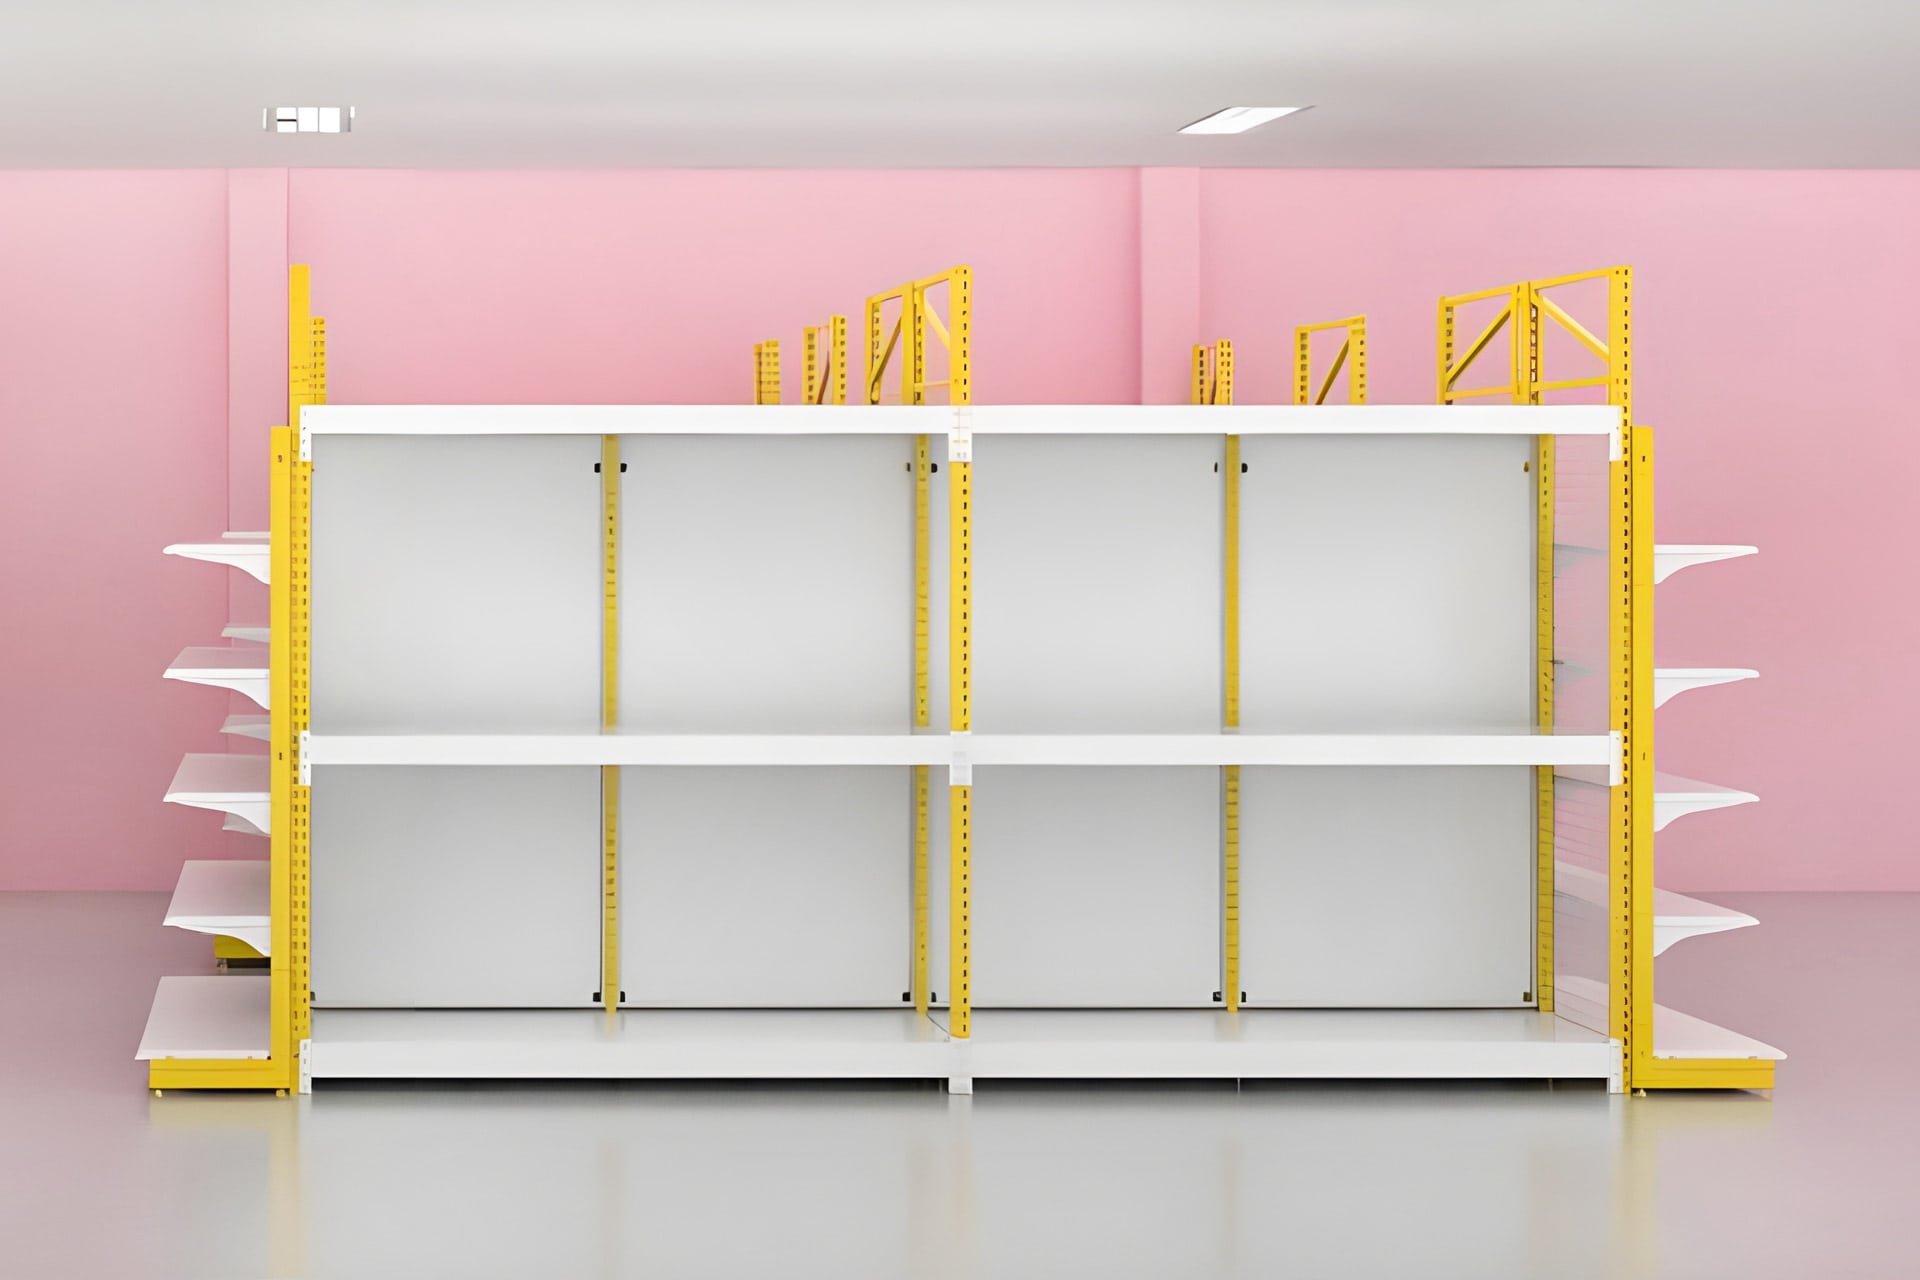 ออกแบบแร็คครอบชั้นวางสินค้า 3D สีเหลือง ร้านมาลีค้าวัสดุ